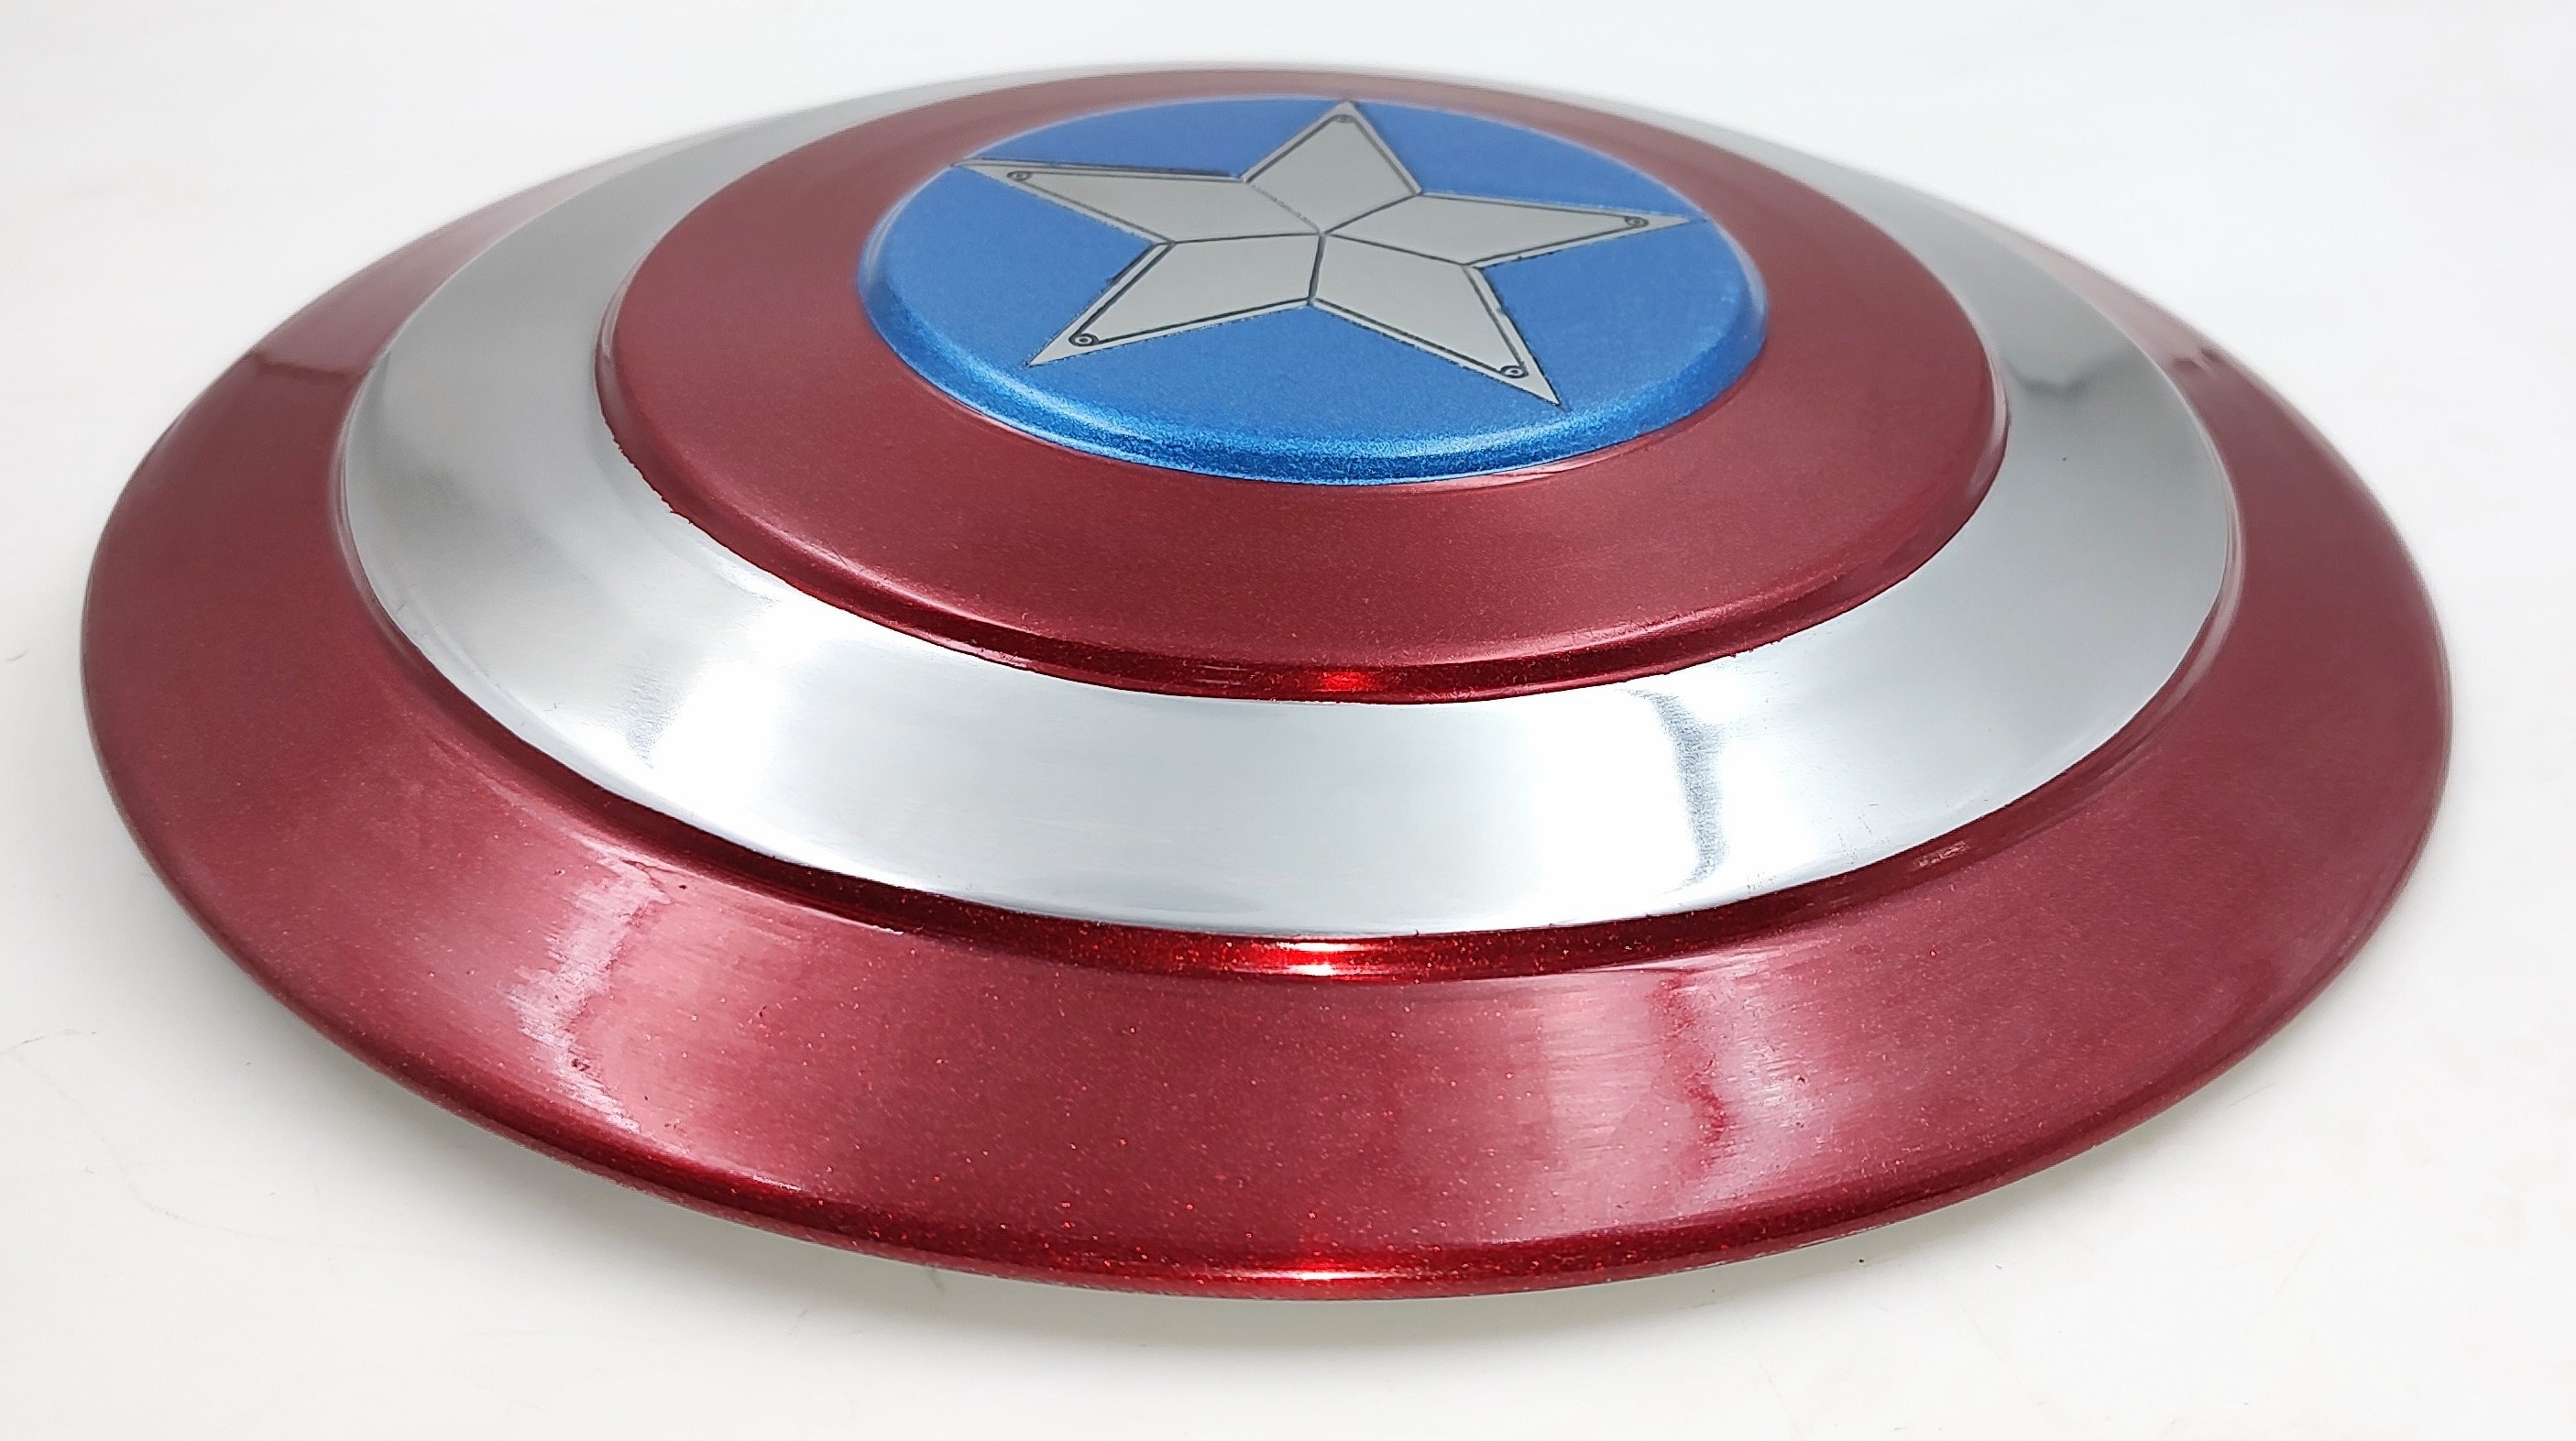 Disfraz Niño - Superhéroe Capitán América Juguete 12 Escudo